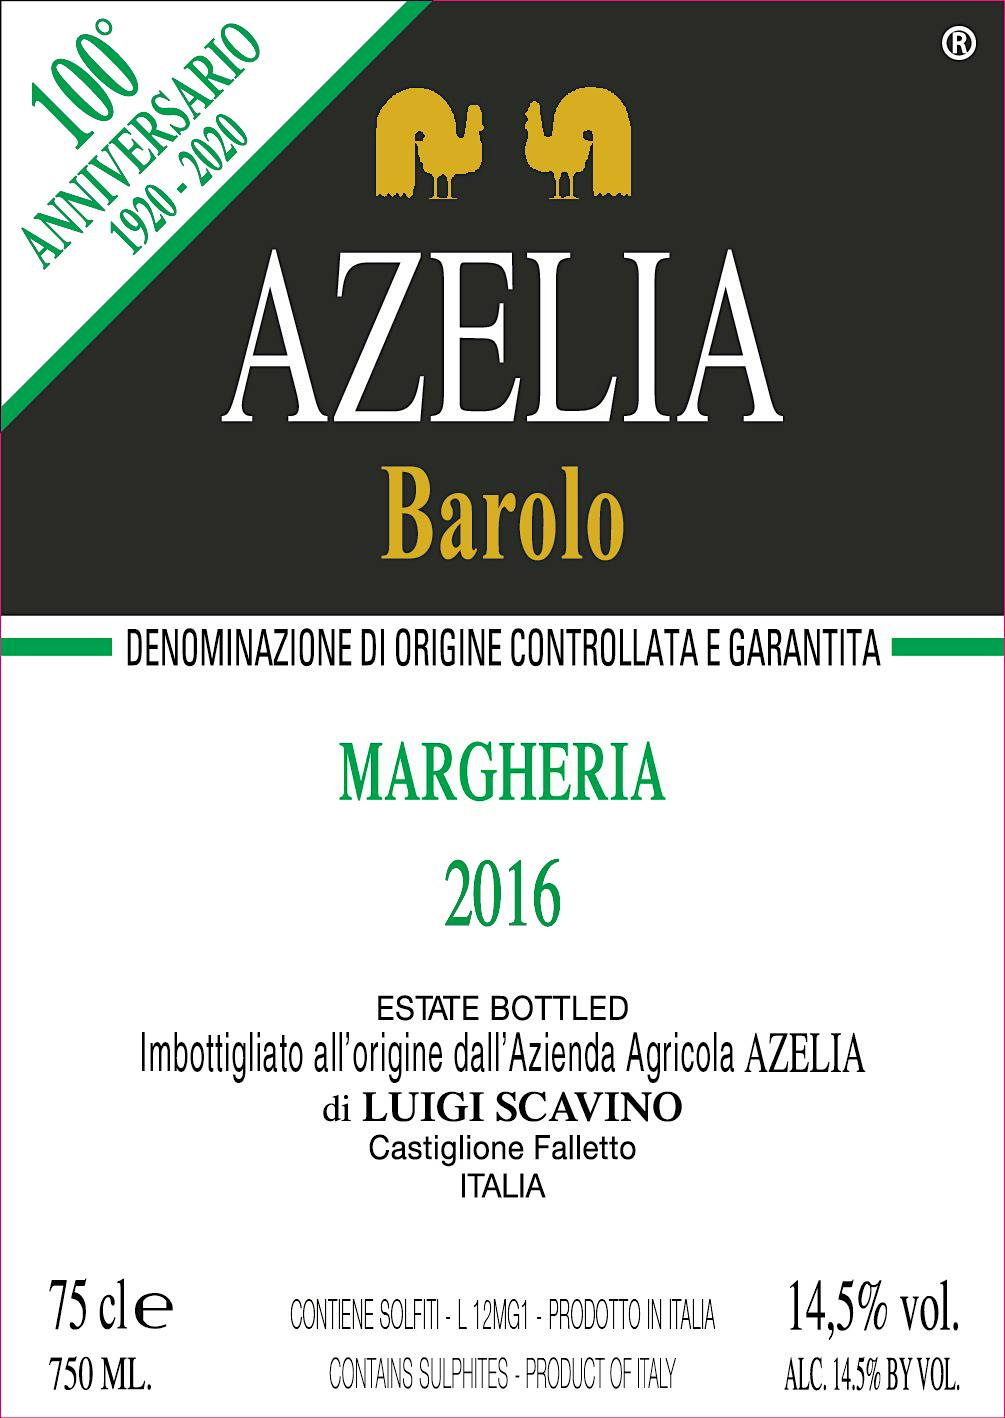 Label for Azelia